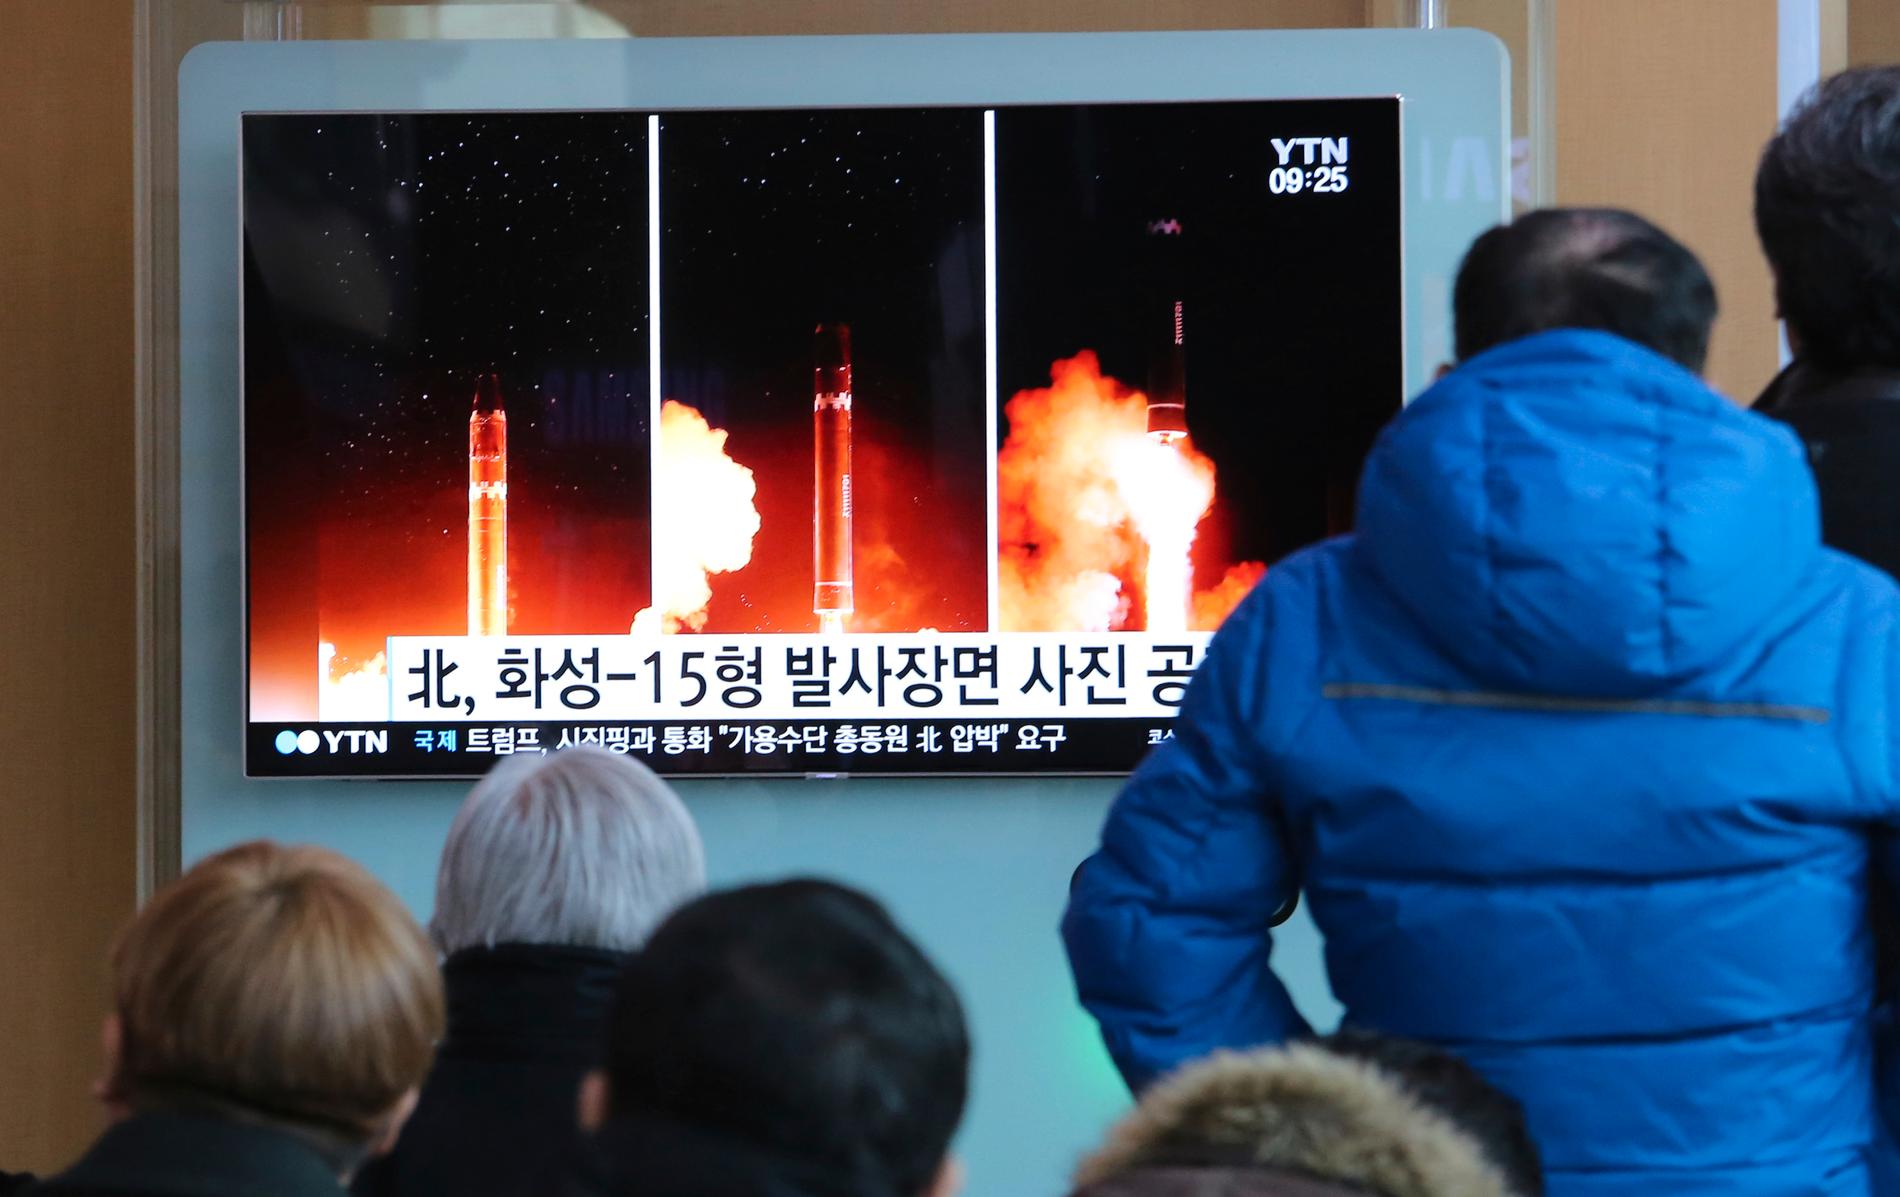 Det nordkoreanska missiltestet i slutet av november förra året satte skräck i grannlandet i syd.